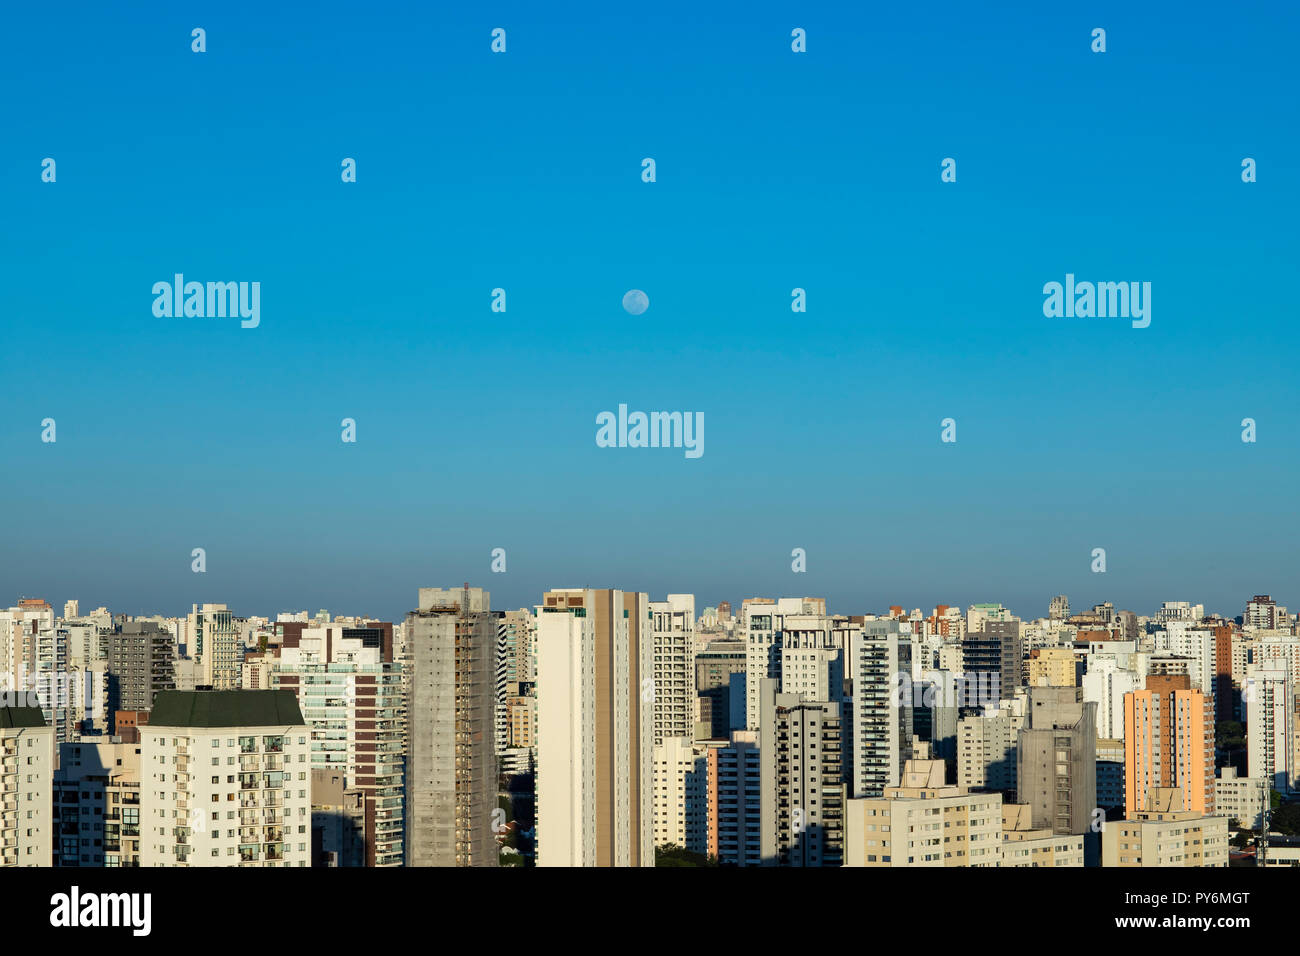 Lune sur une journée ensoleillée dans la ville. Lune sur une journée ensoleillée dans la ville de Sao Paulo, Brésil. Banque D'Images